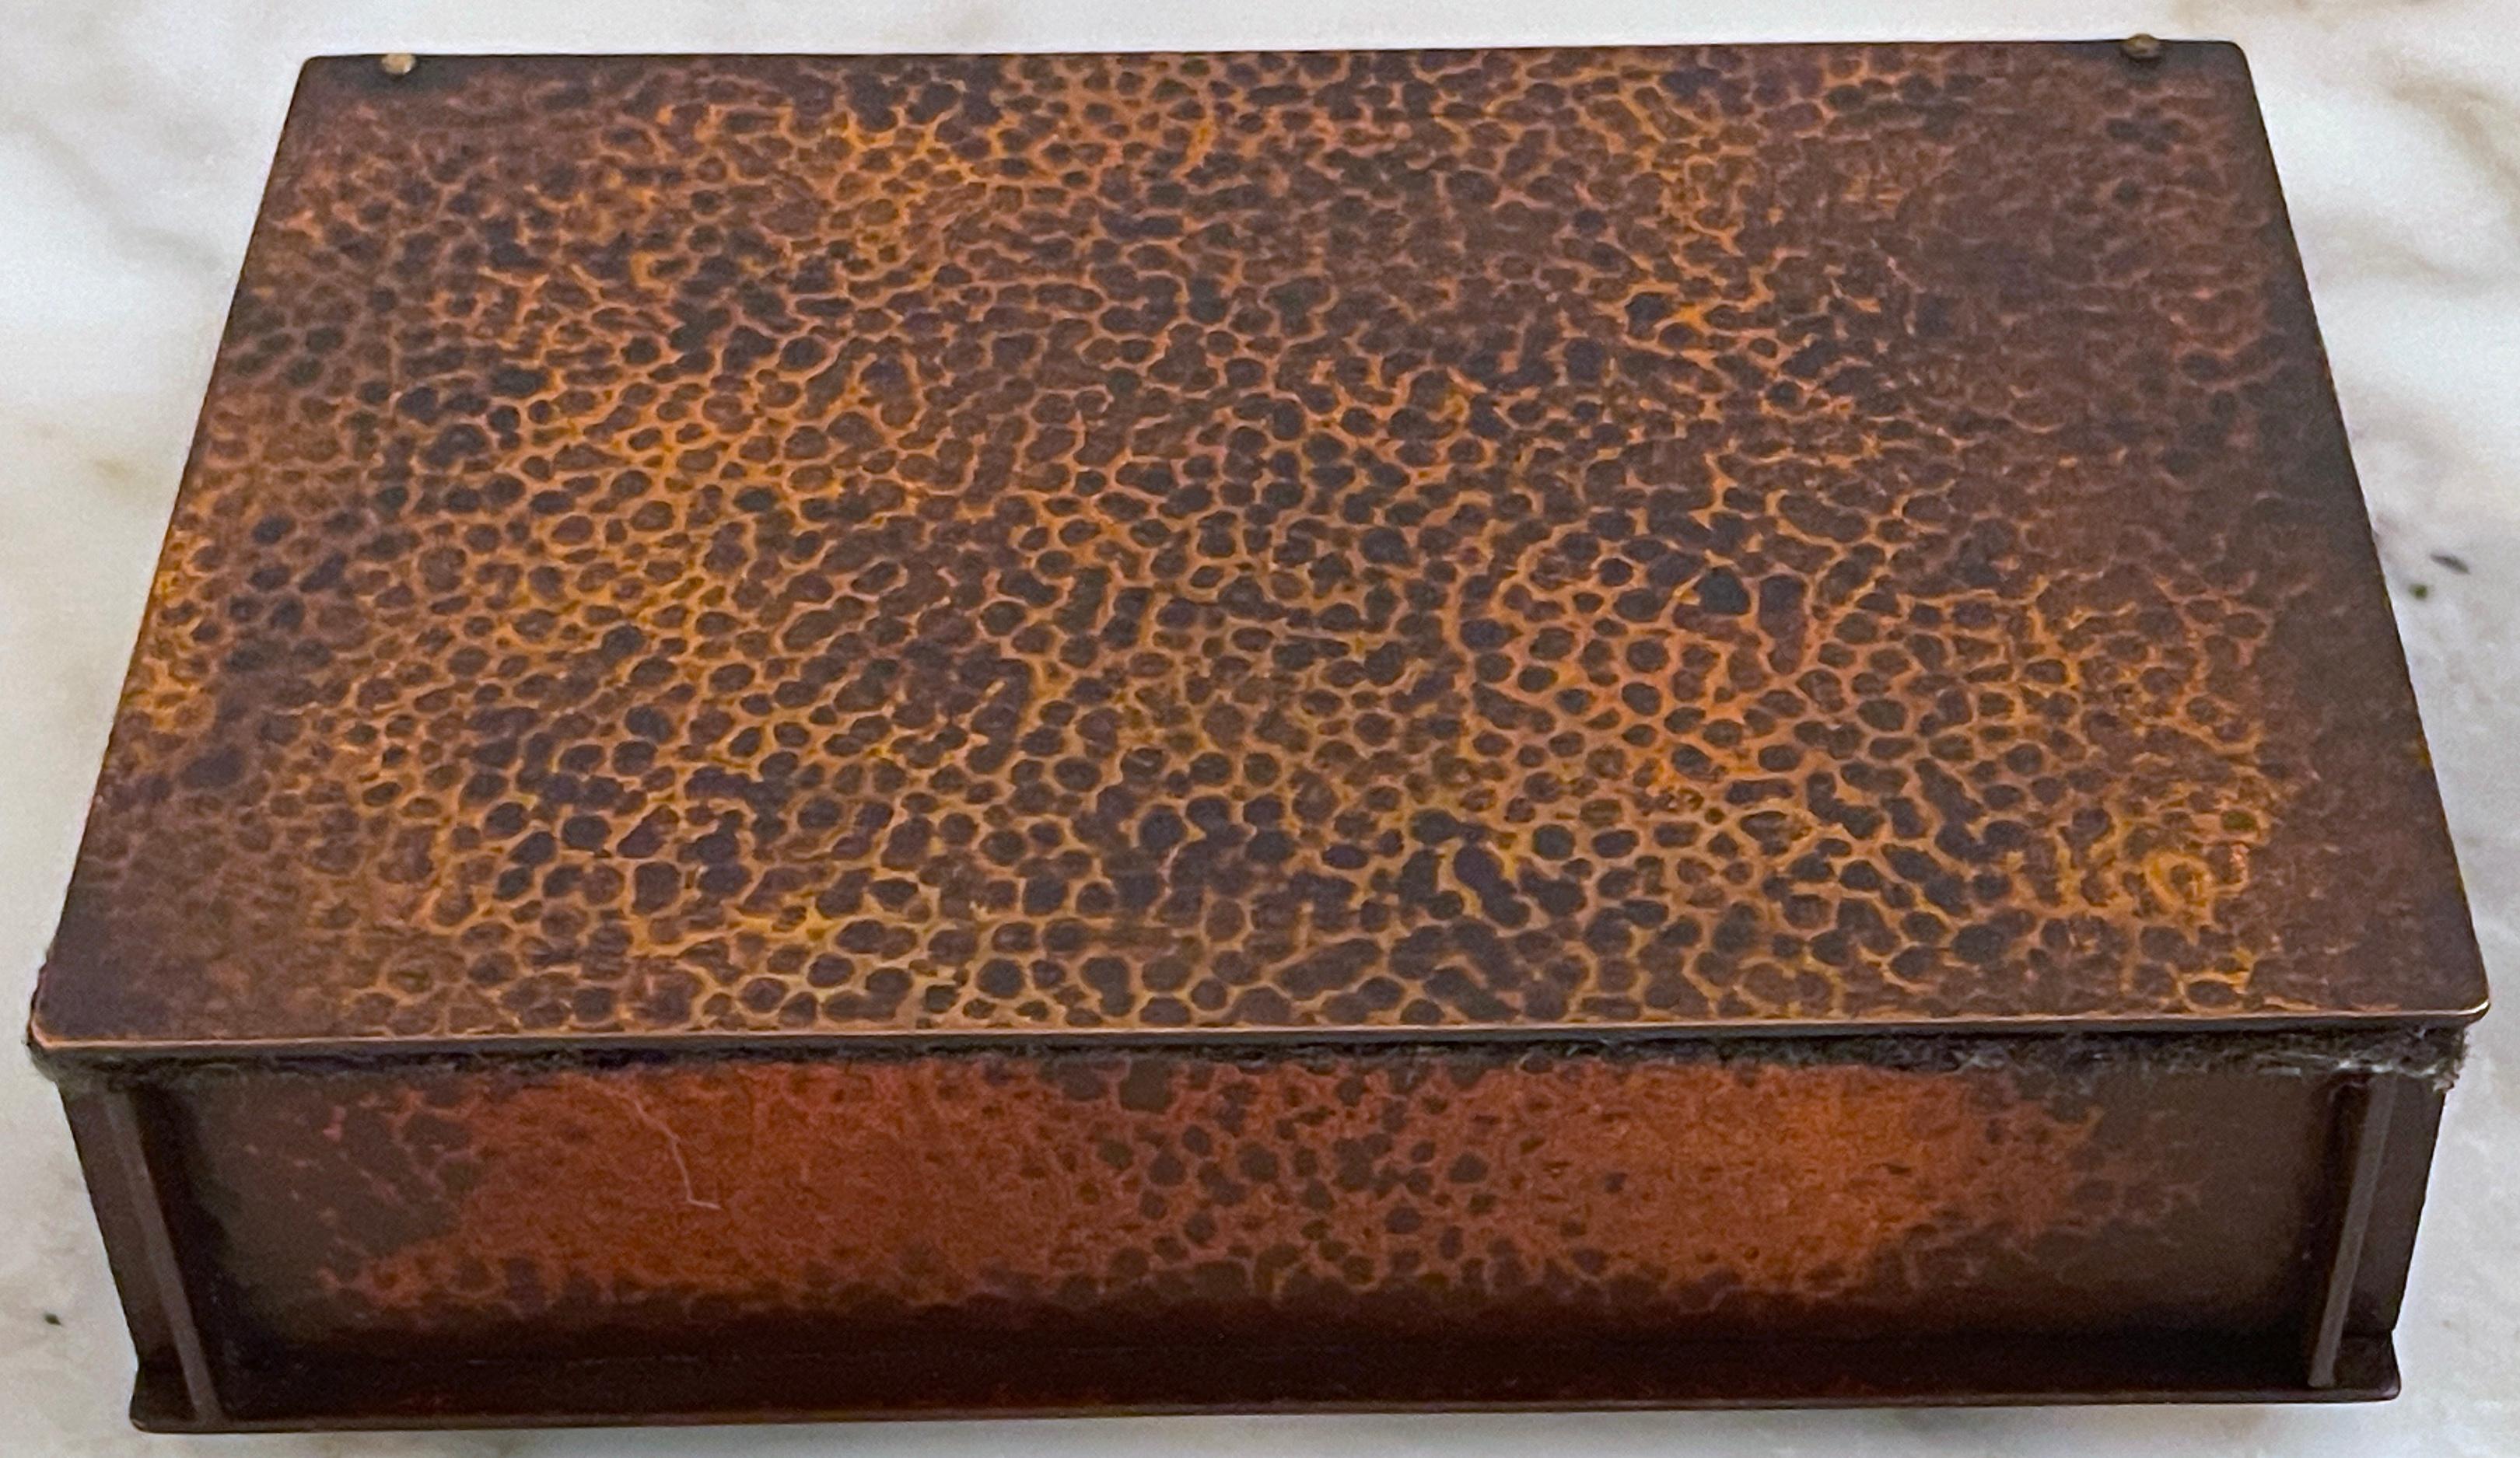 Boîte de table en cuivre Arts & Crafts, de l'auberge Roycroft à East Aurora, New York 
États-Unis, vers 1905
Porte le Label 